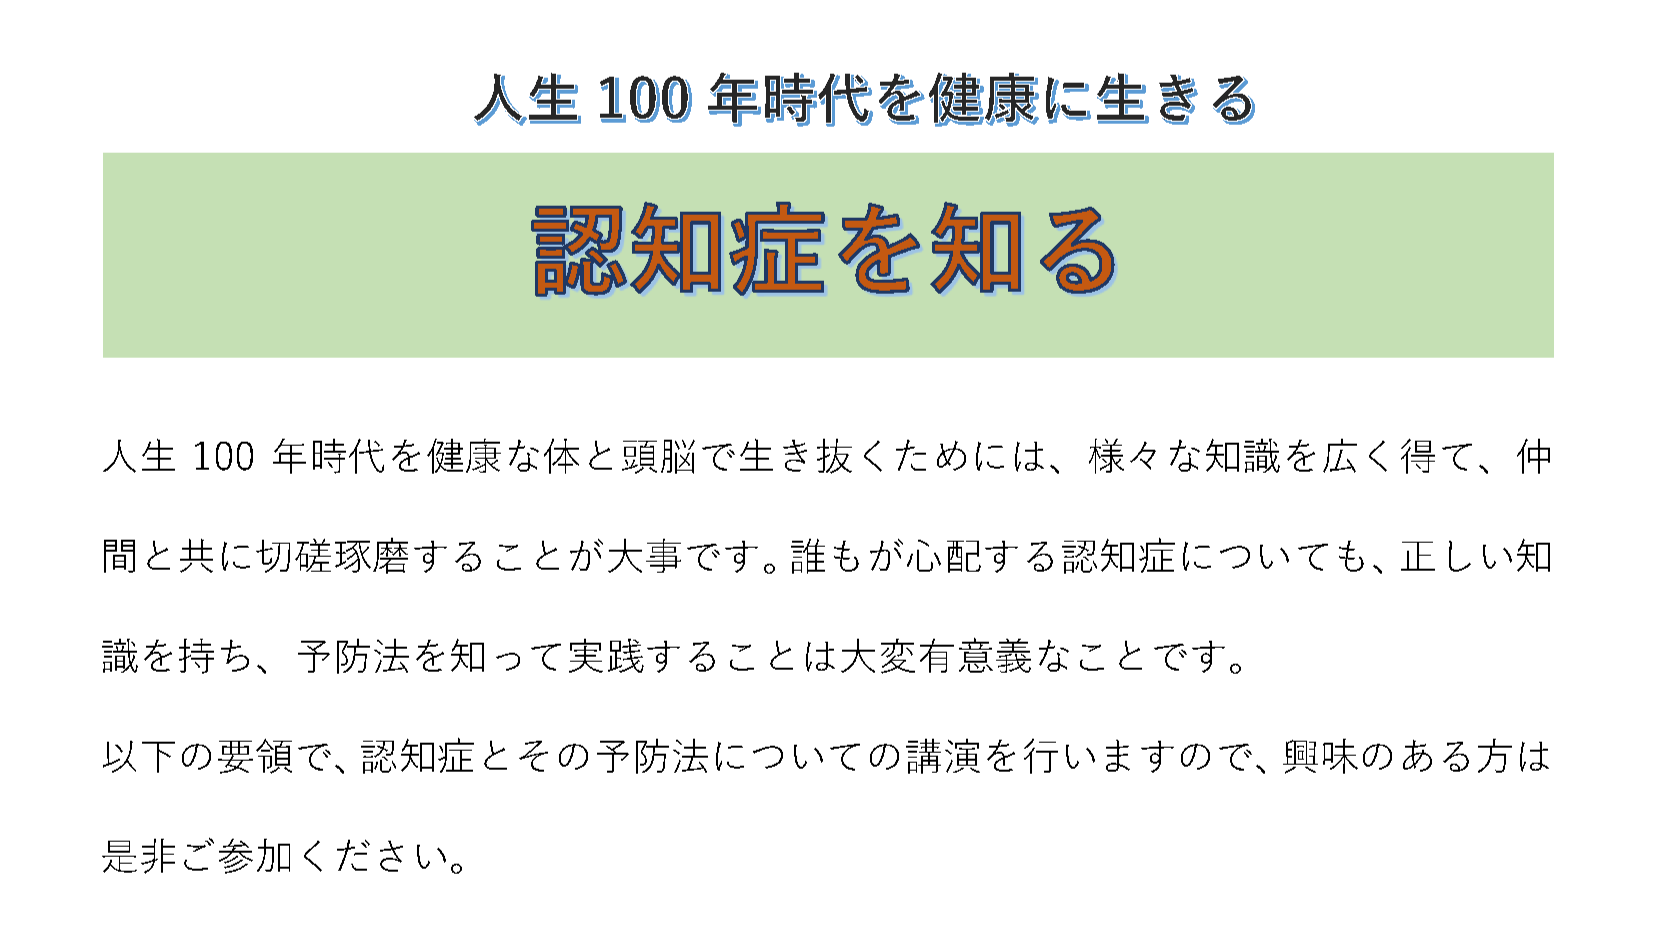 １０月１５日（日）津市正覚寺さんにて「人生１００年時代を健康に生きる」講座を開催します